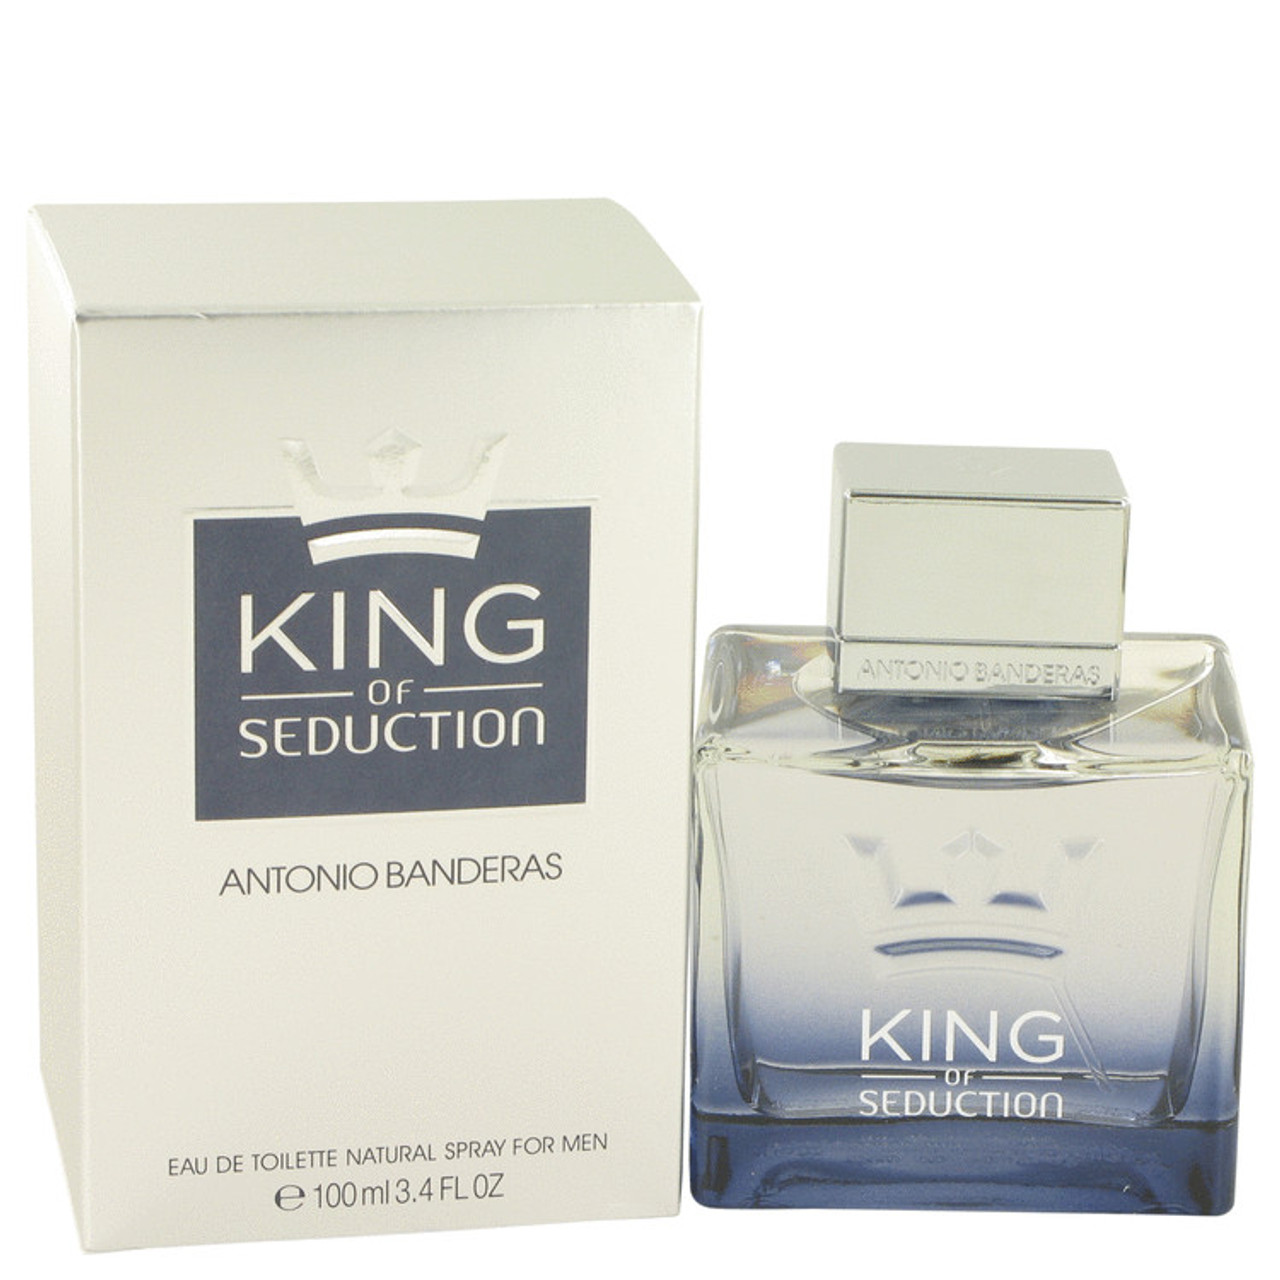 King of Seduction by Antonio Banderas Eau De Toilette Spray for Men